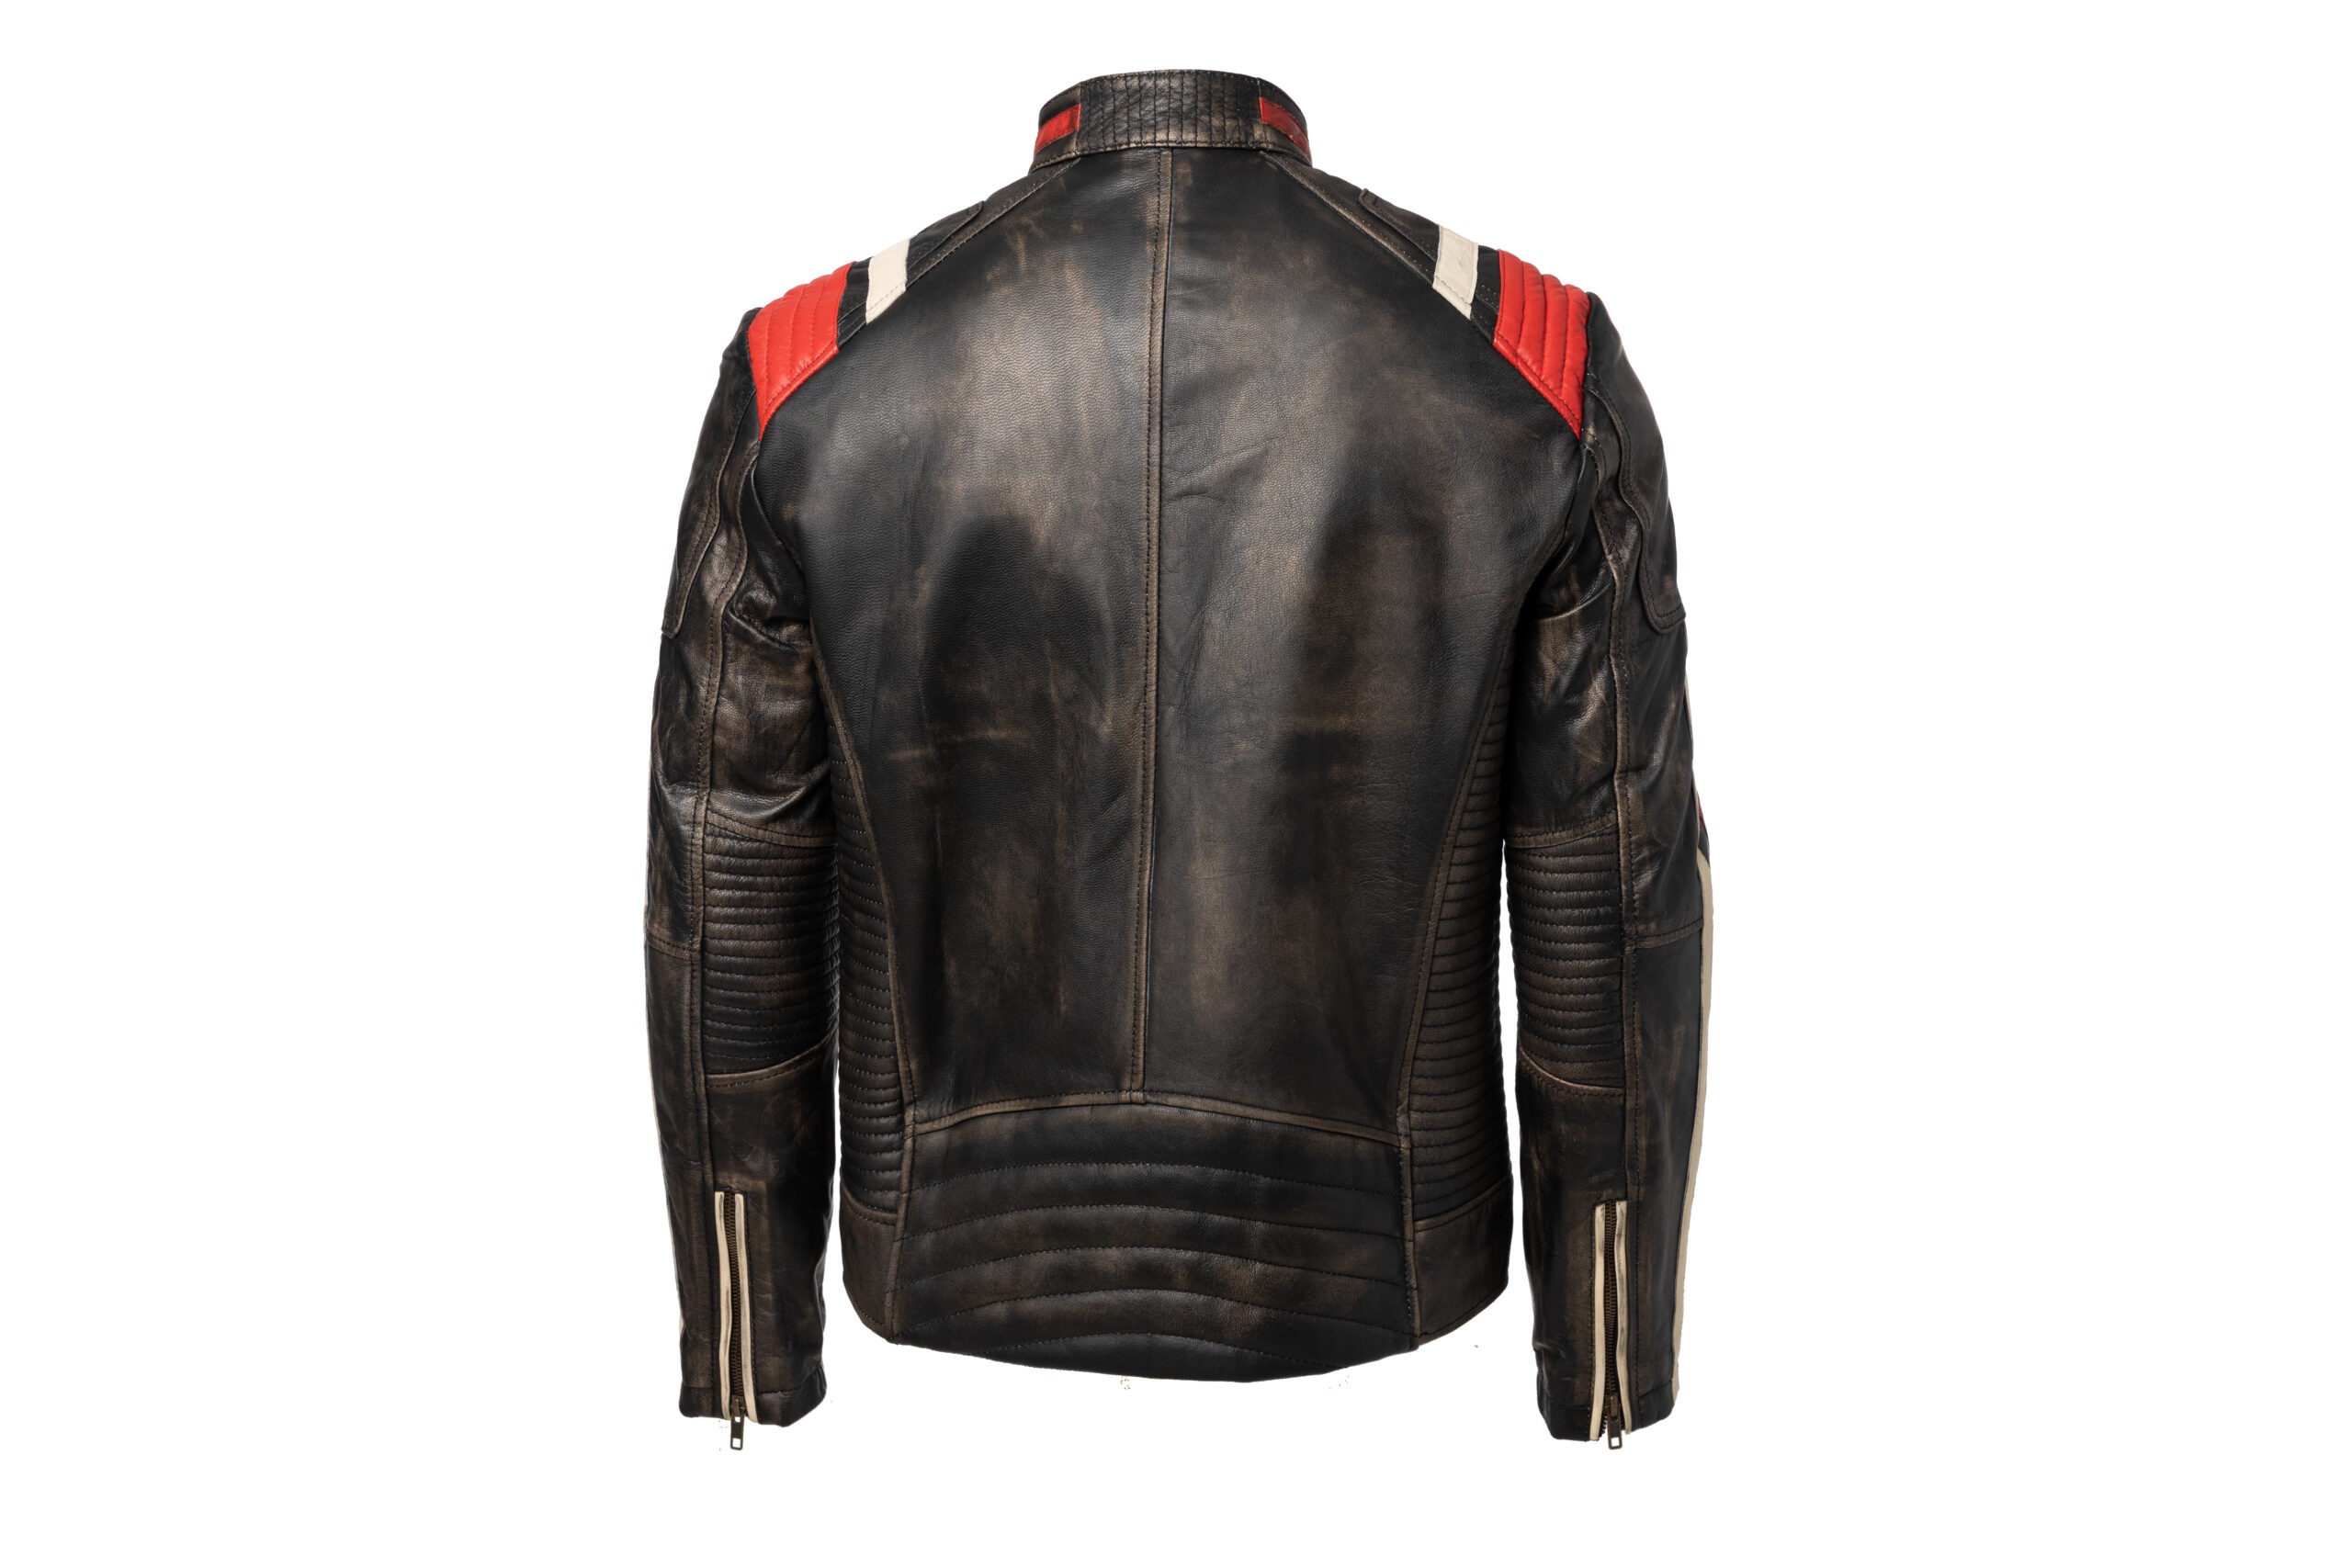 Men's Motorcycle Retro Vintage Leather Jacket Used look - Metal Badge